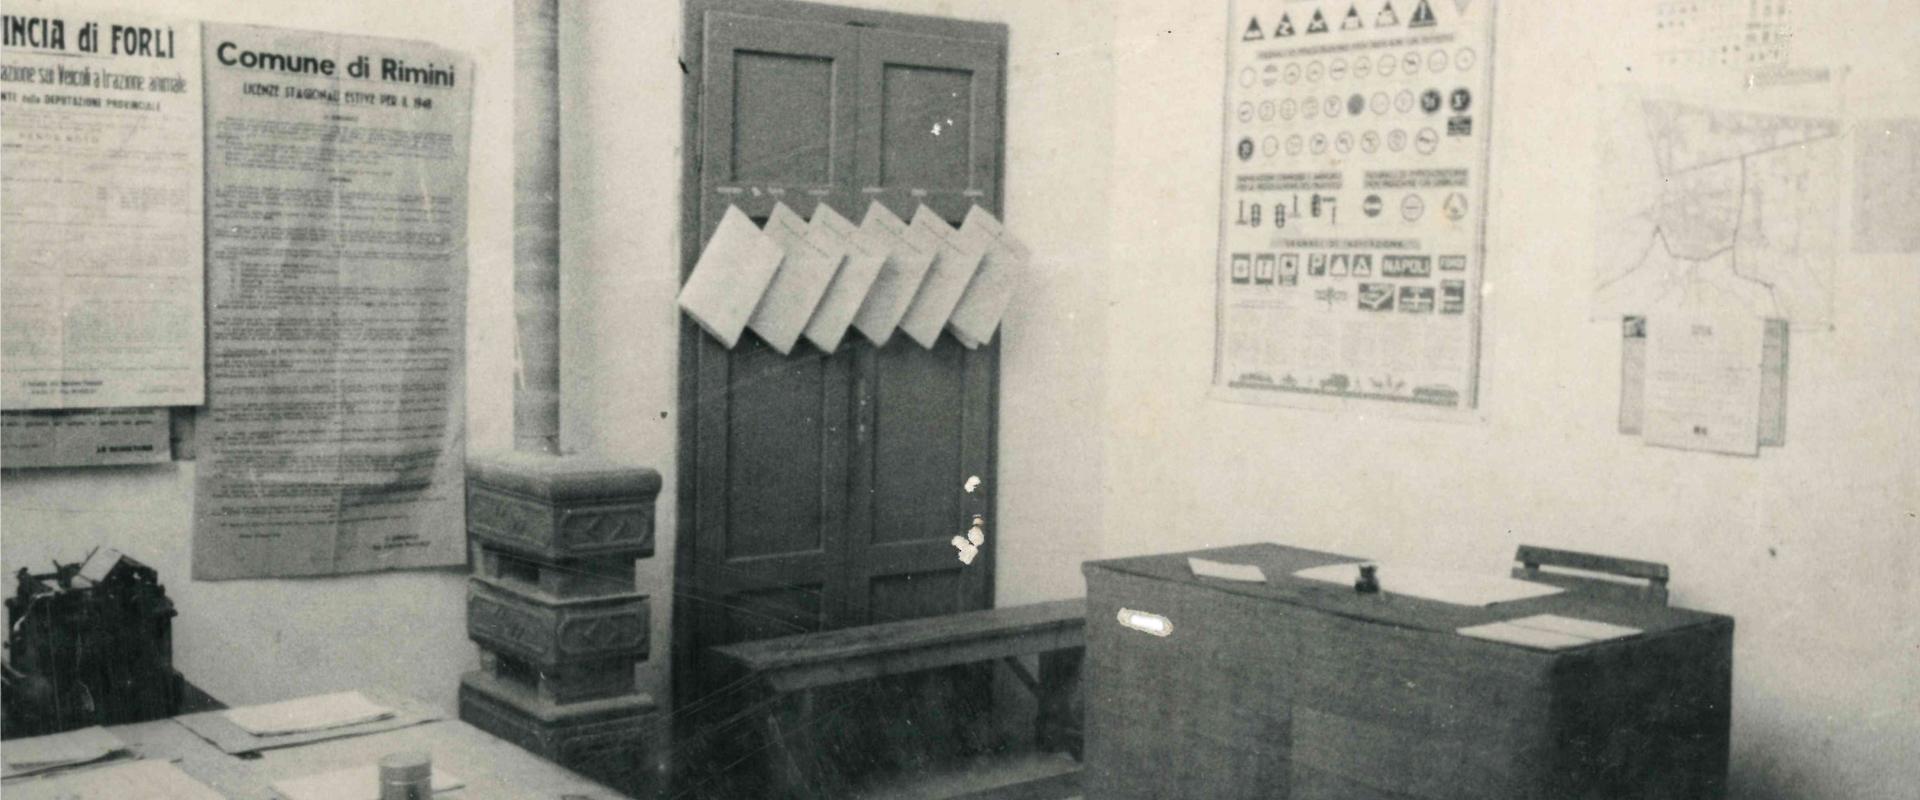 foto di un ufficio dei Vigili Urbani all'interno del palazzo Ceschina. Vi sono due scrivanie opposte con sopra timbri e carte, alle pareti dei manifesti tra cui uno del comune per le licenze estive 1948, l'altro con la pianta della città 